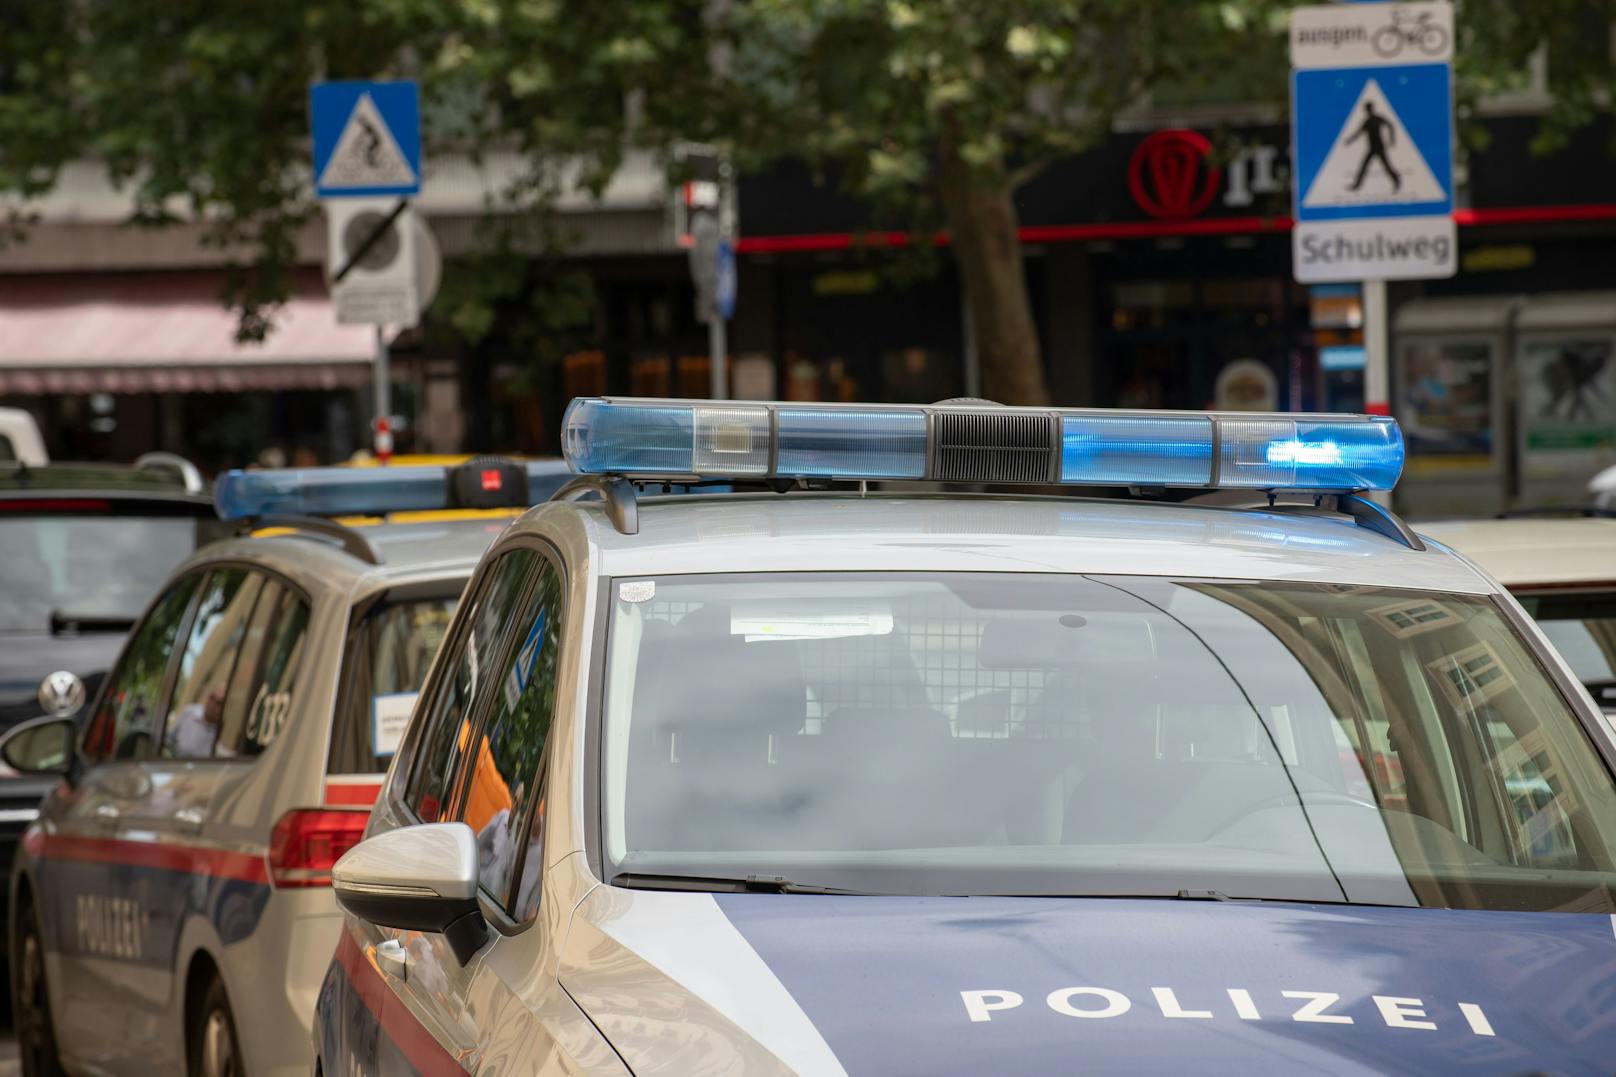 Polizei-Einsatz in Wien. (Archivfoto)